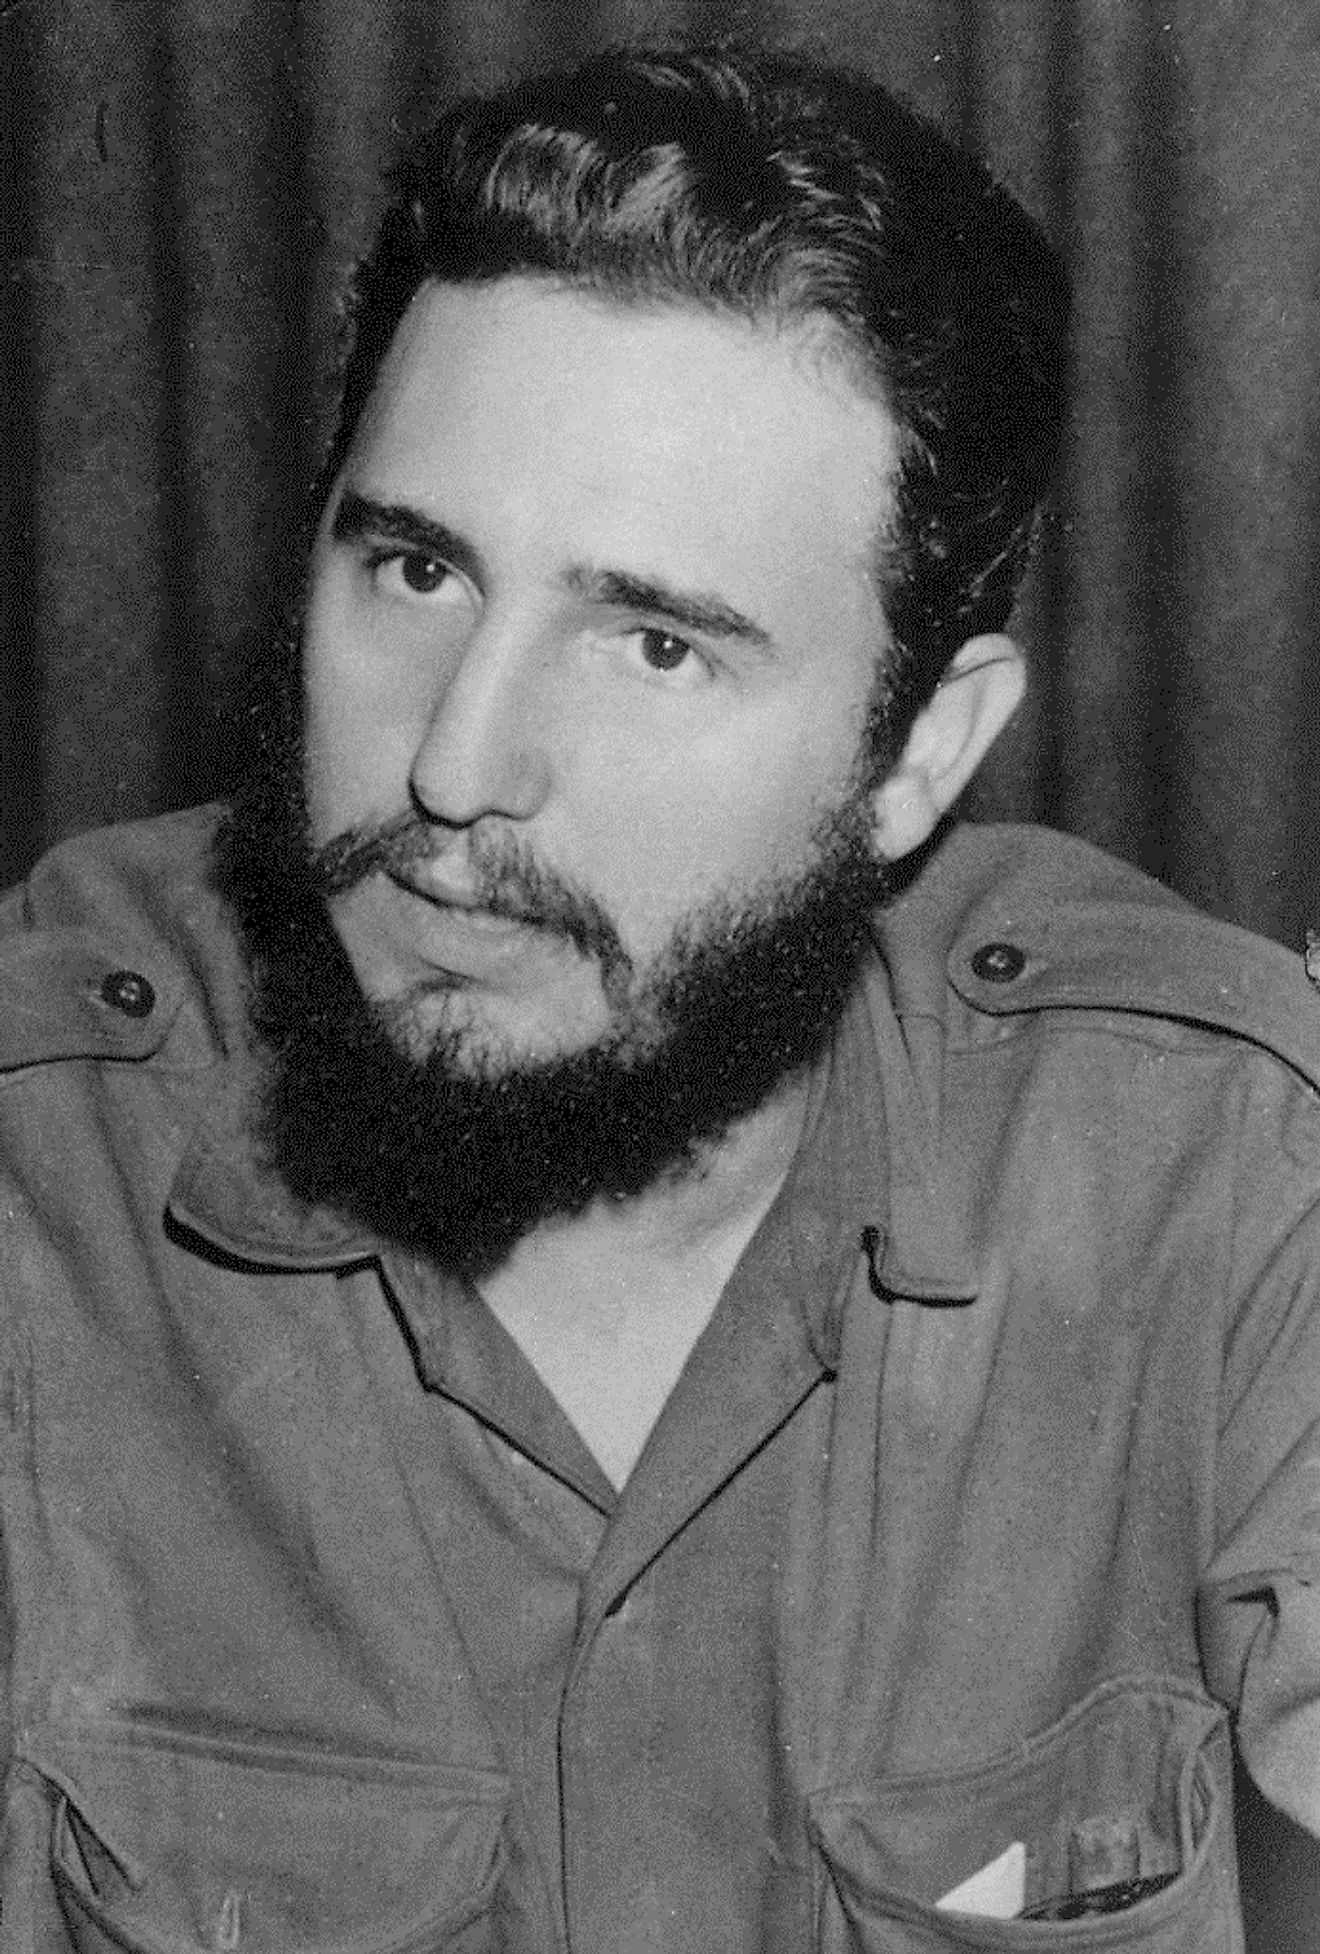 Fidel Castro. Image credit: Public domain